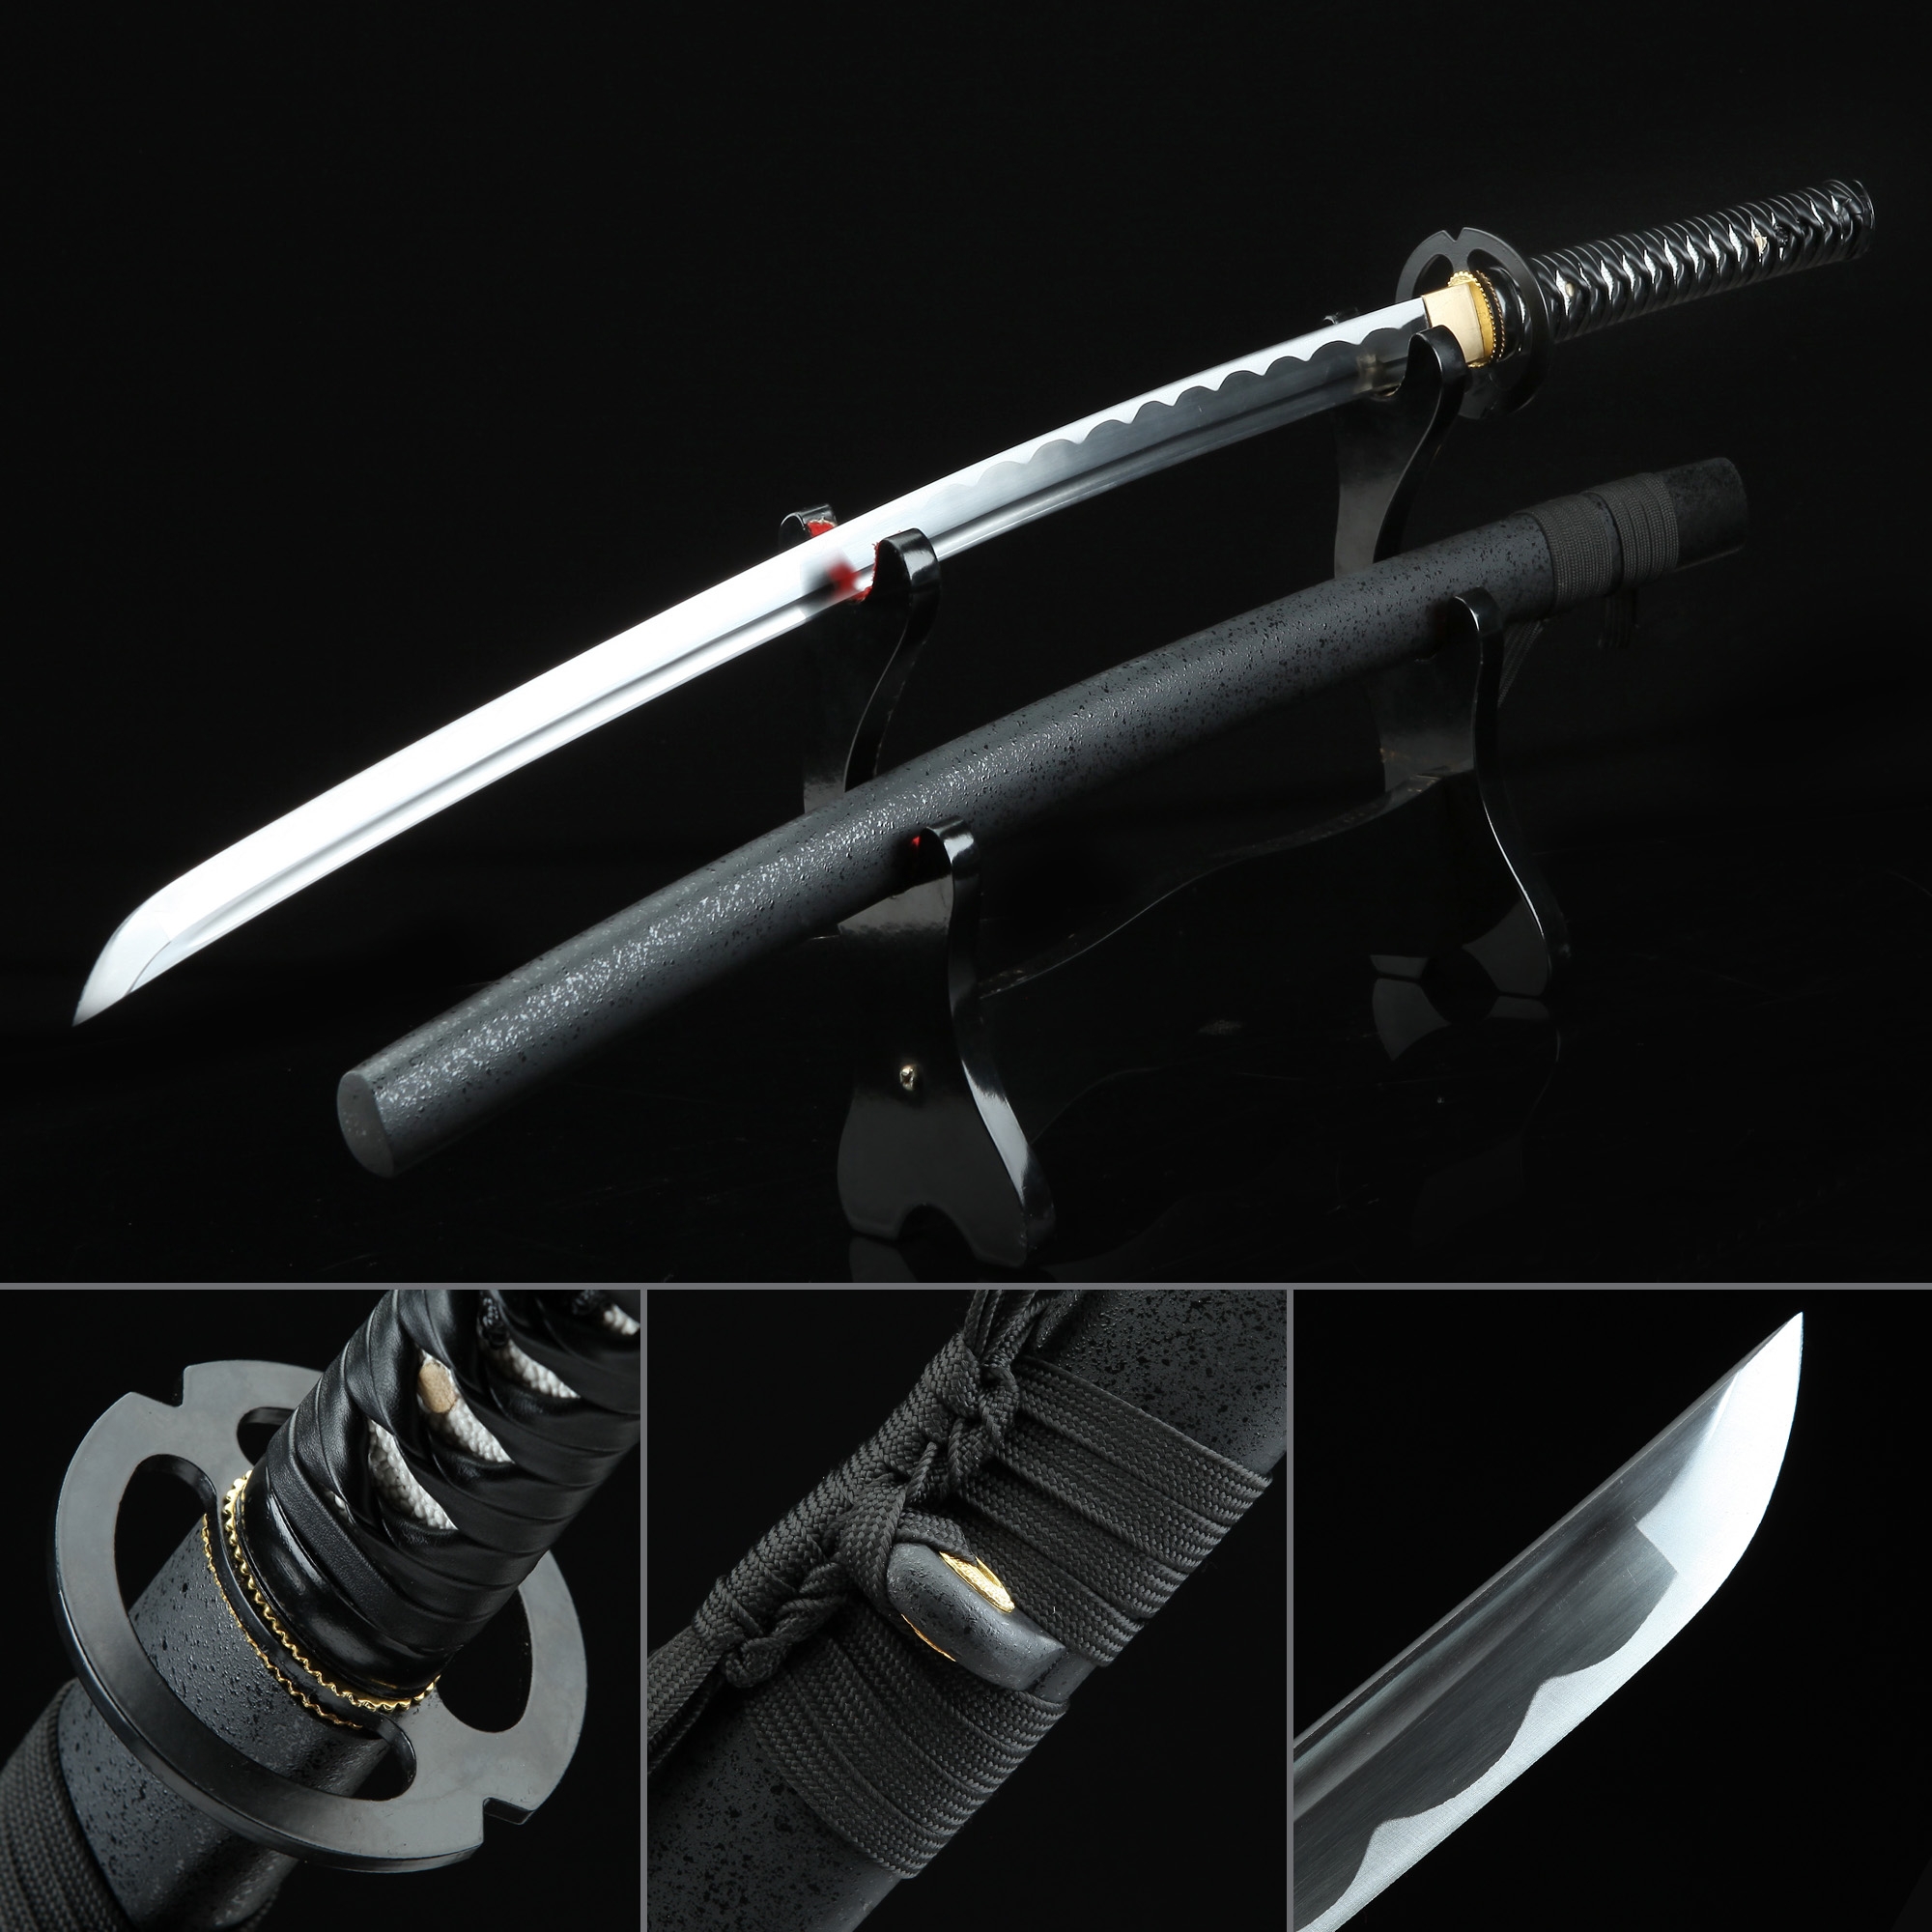 Real katana sword - molitool